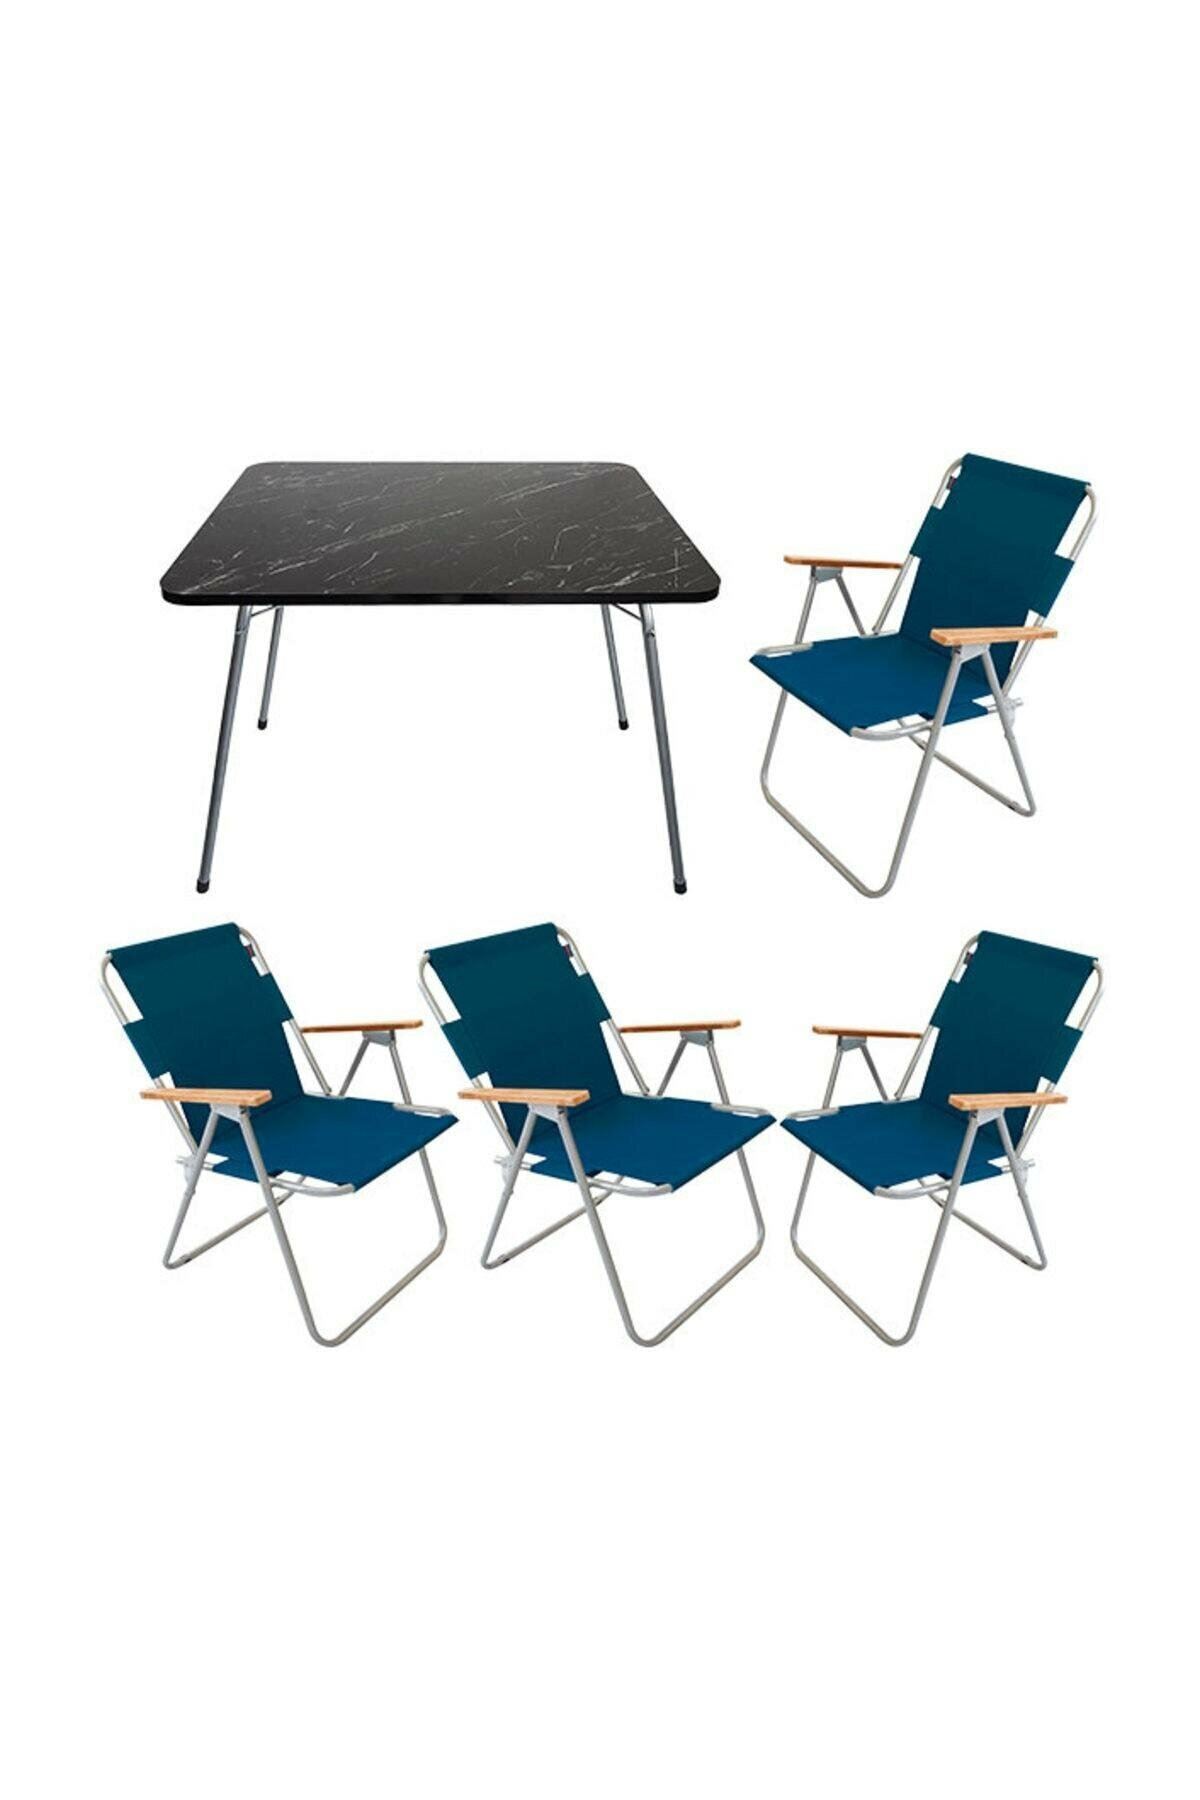 Bofigo 60x80 Granit Katlanır Masa + 4 Adet Katlanır Sandalye Kamp Seti Bahçe Balkon Takımı Mavi